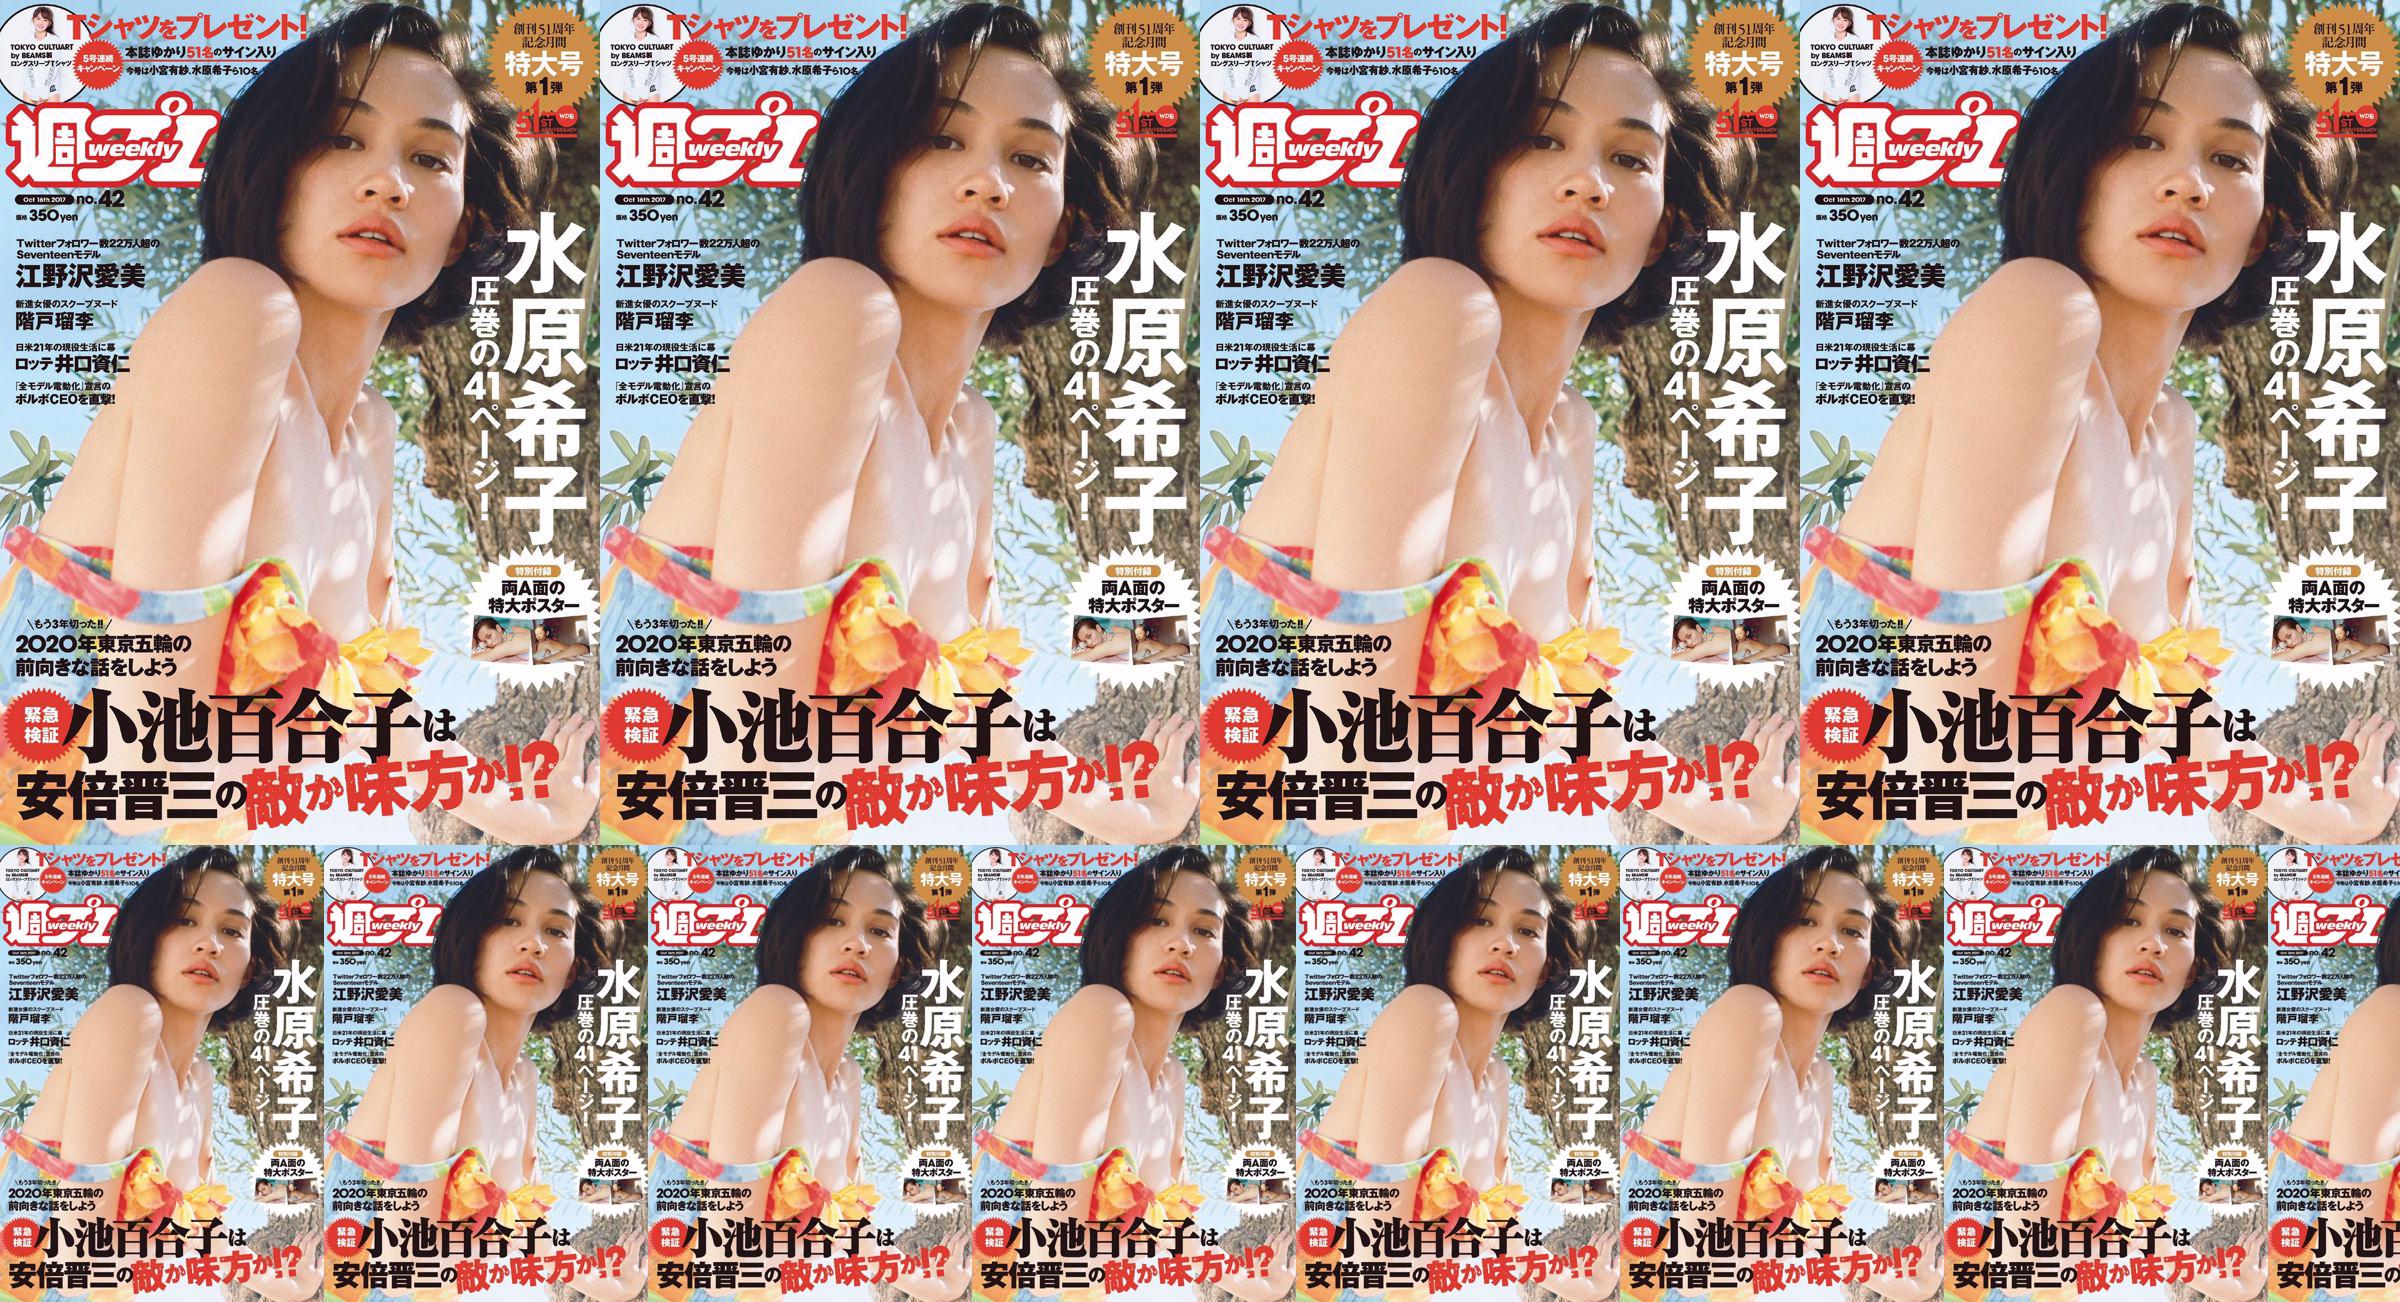 Kiko Mizuhara Manami Enosawa Serina Fukui Miu Nakamura Ruri Shinato [Wöchentlicher Playboy] 2017 Nr. 42 Fotomagazin No.a64323 Seite 8